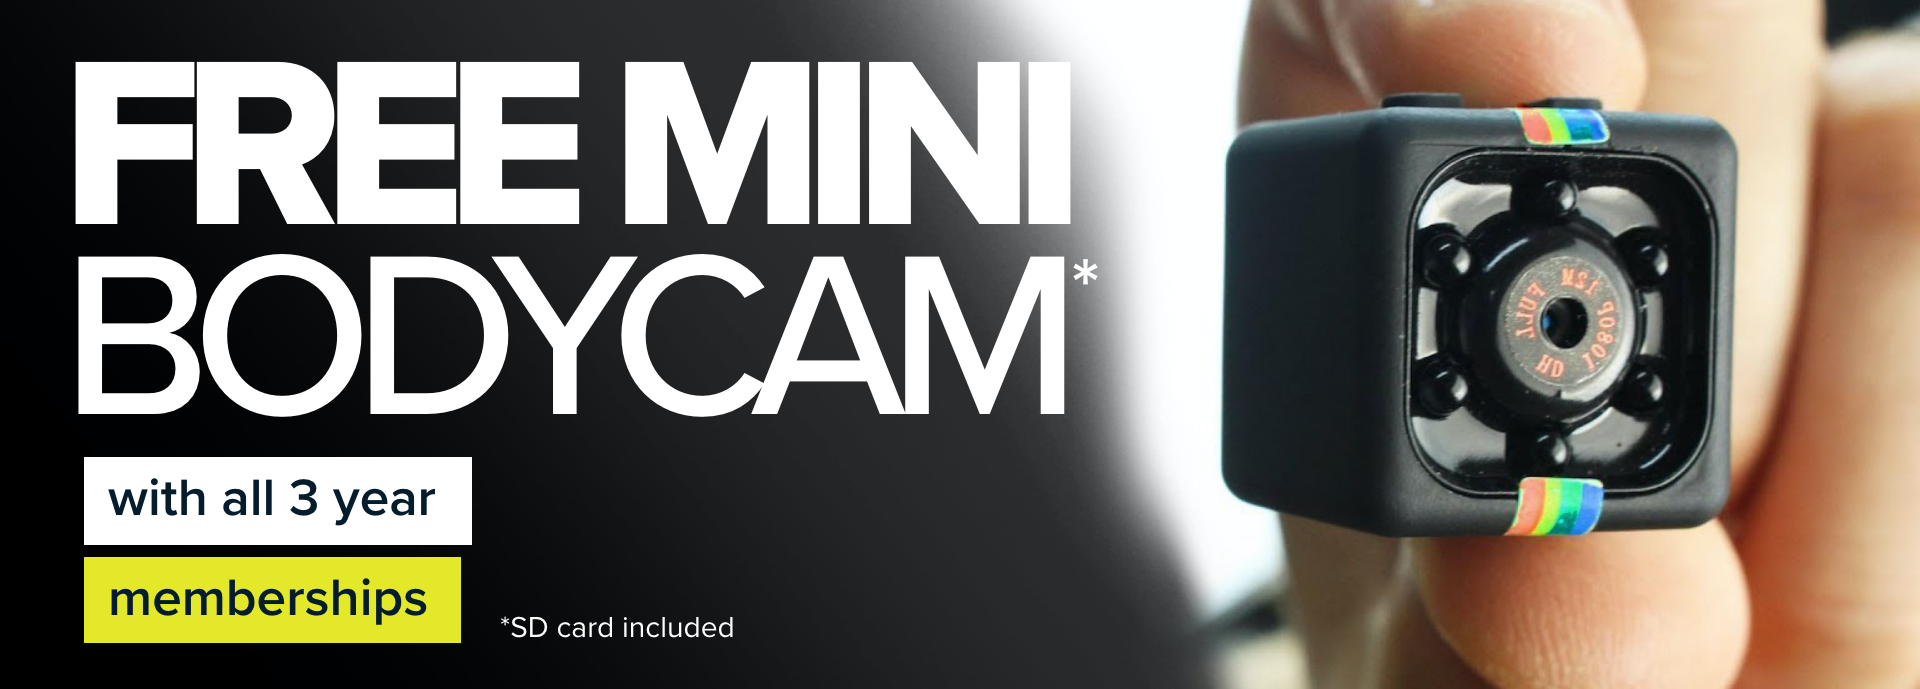 Free Mini Bodycam